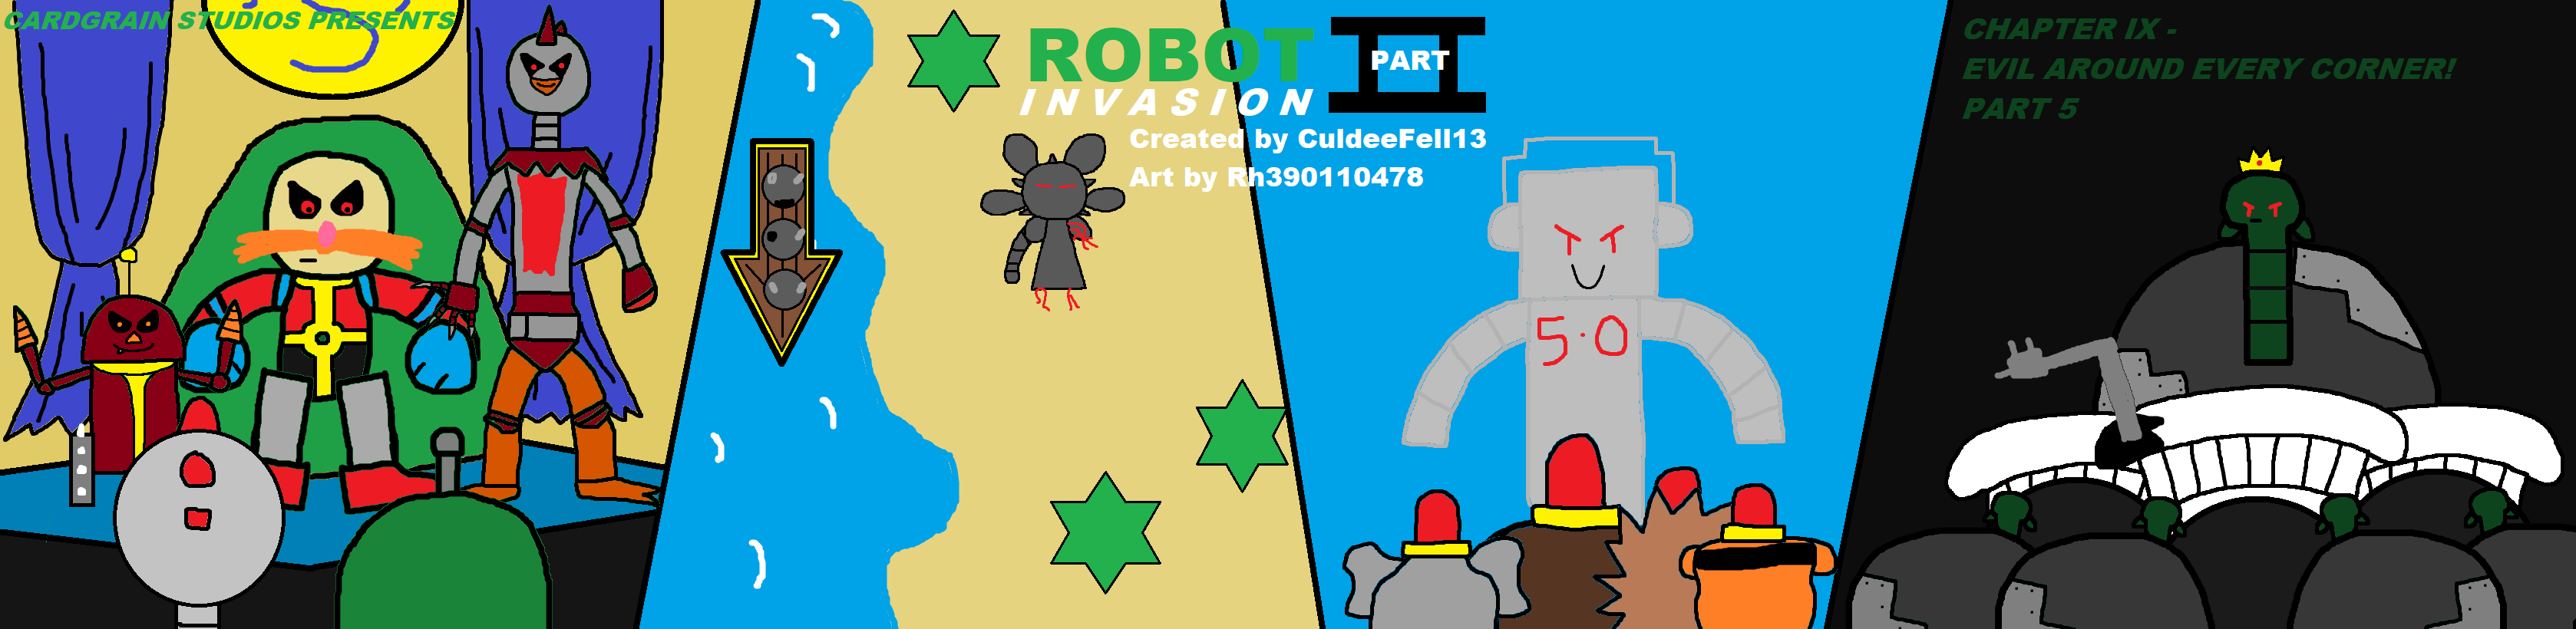 Robot Invasion Part Ii Sml Fanon Wiki Fandom - aj evil robot roblox